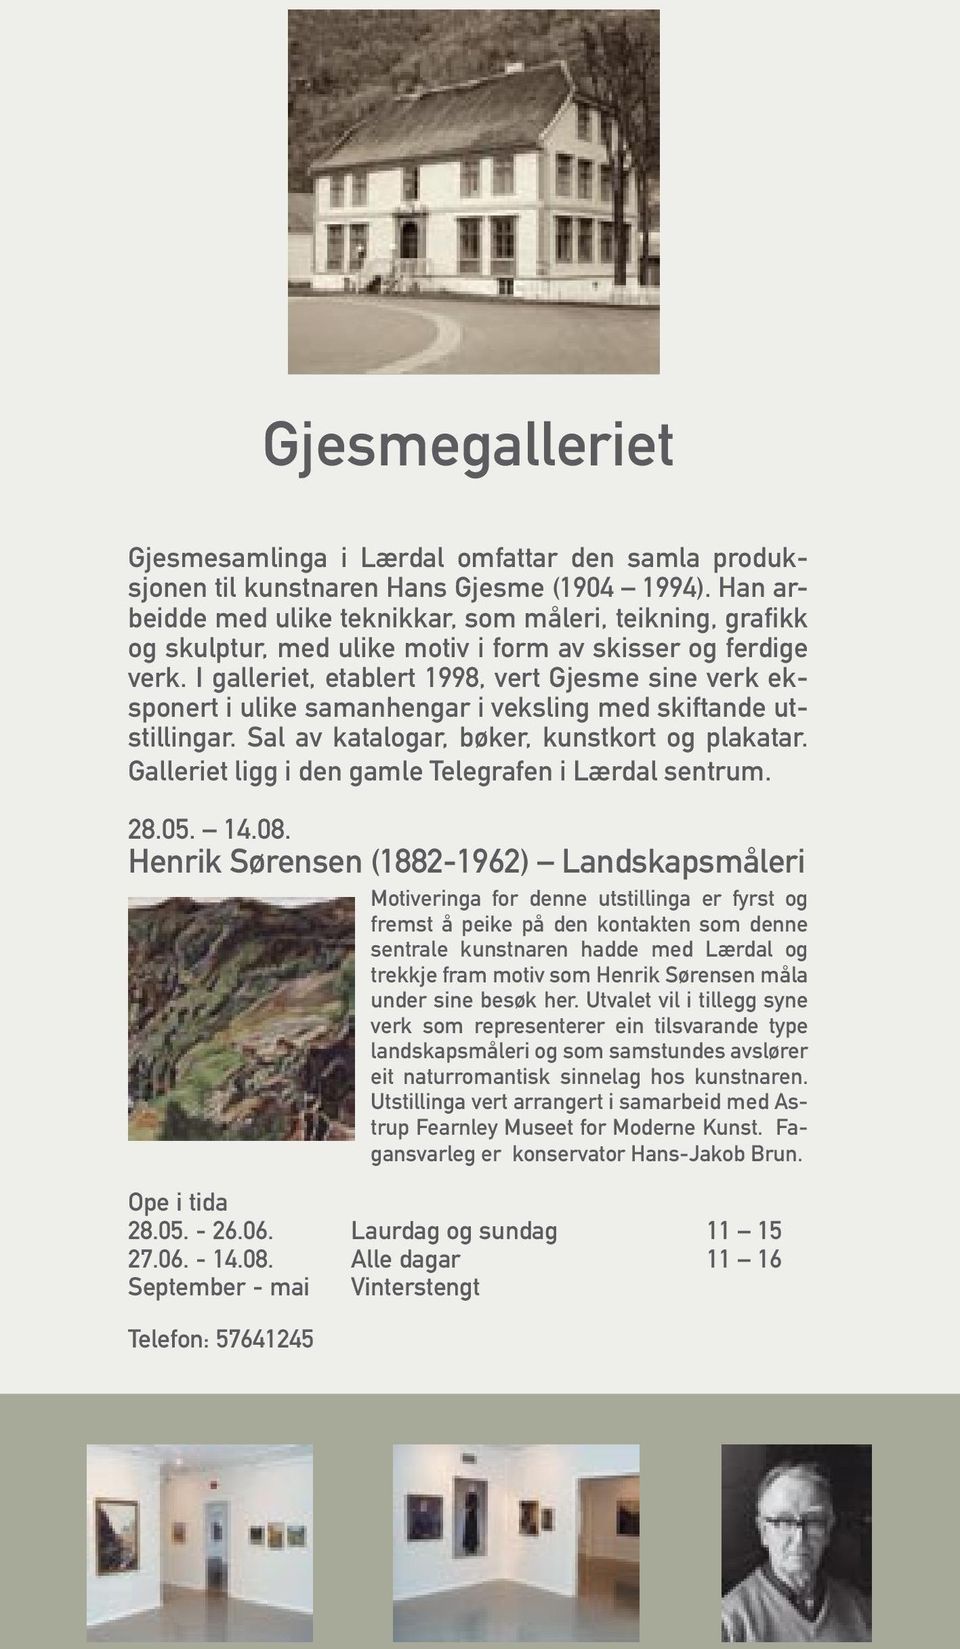 I galleriet, etablert 1998, vert Gjesme sine verk eksponert i ulike samanhengar i veksling med skiftande utstillingar. Sal av katalogar, bøker, kunstkort og plakatar.